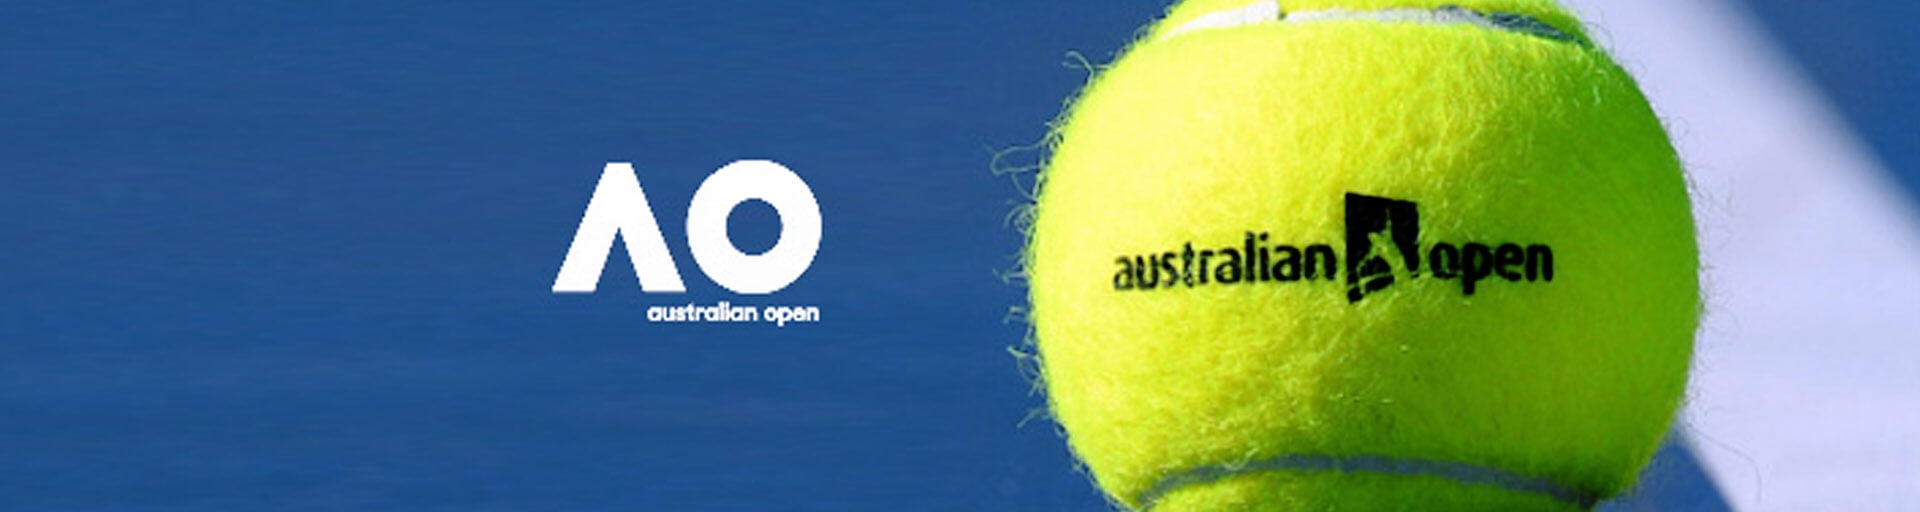 Australian Open 2021: даты, расписание, сетка